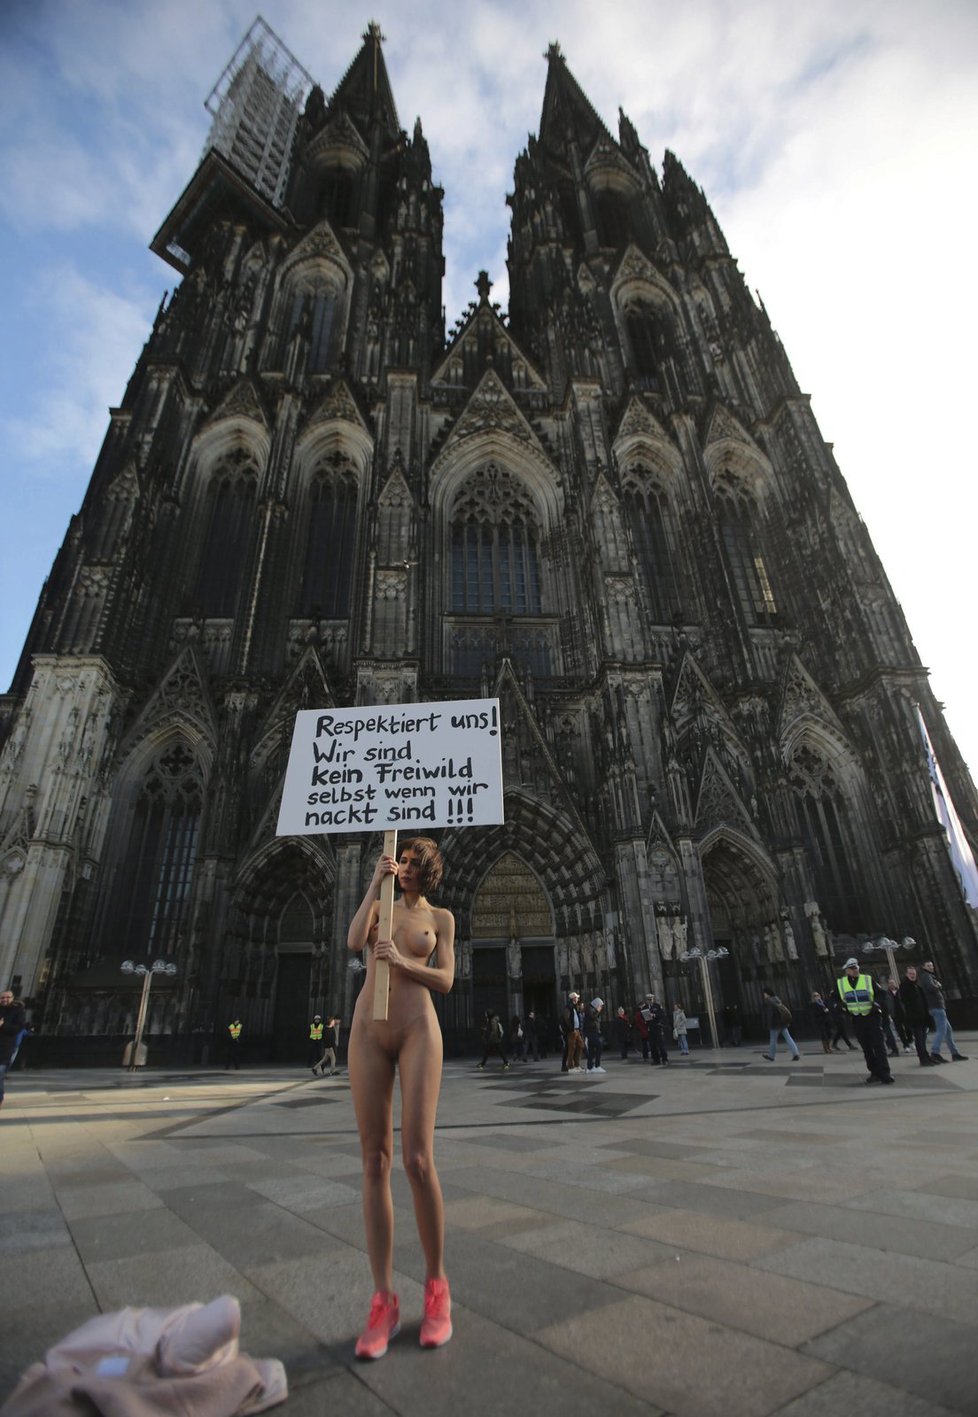 Švýcarská umělkyně Milo Moire s transparentem, se kterým nahá volala po respektu k ženám. Postavila se přitom v pátek před katedrálu v Kolíně nad Rýnem